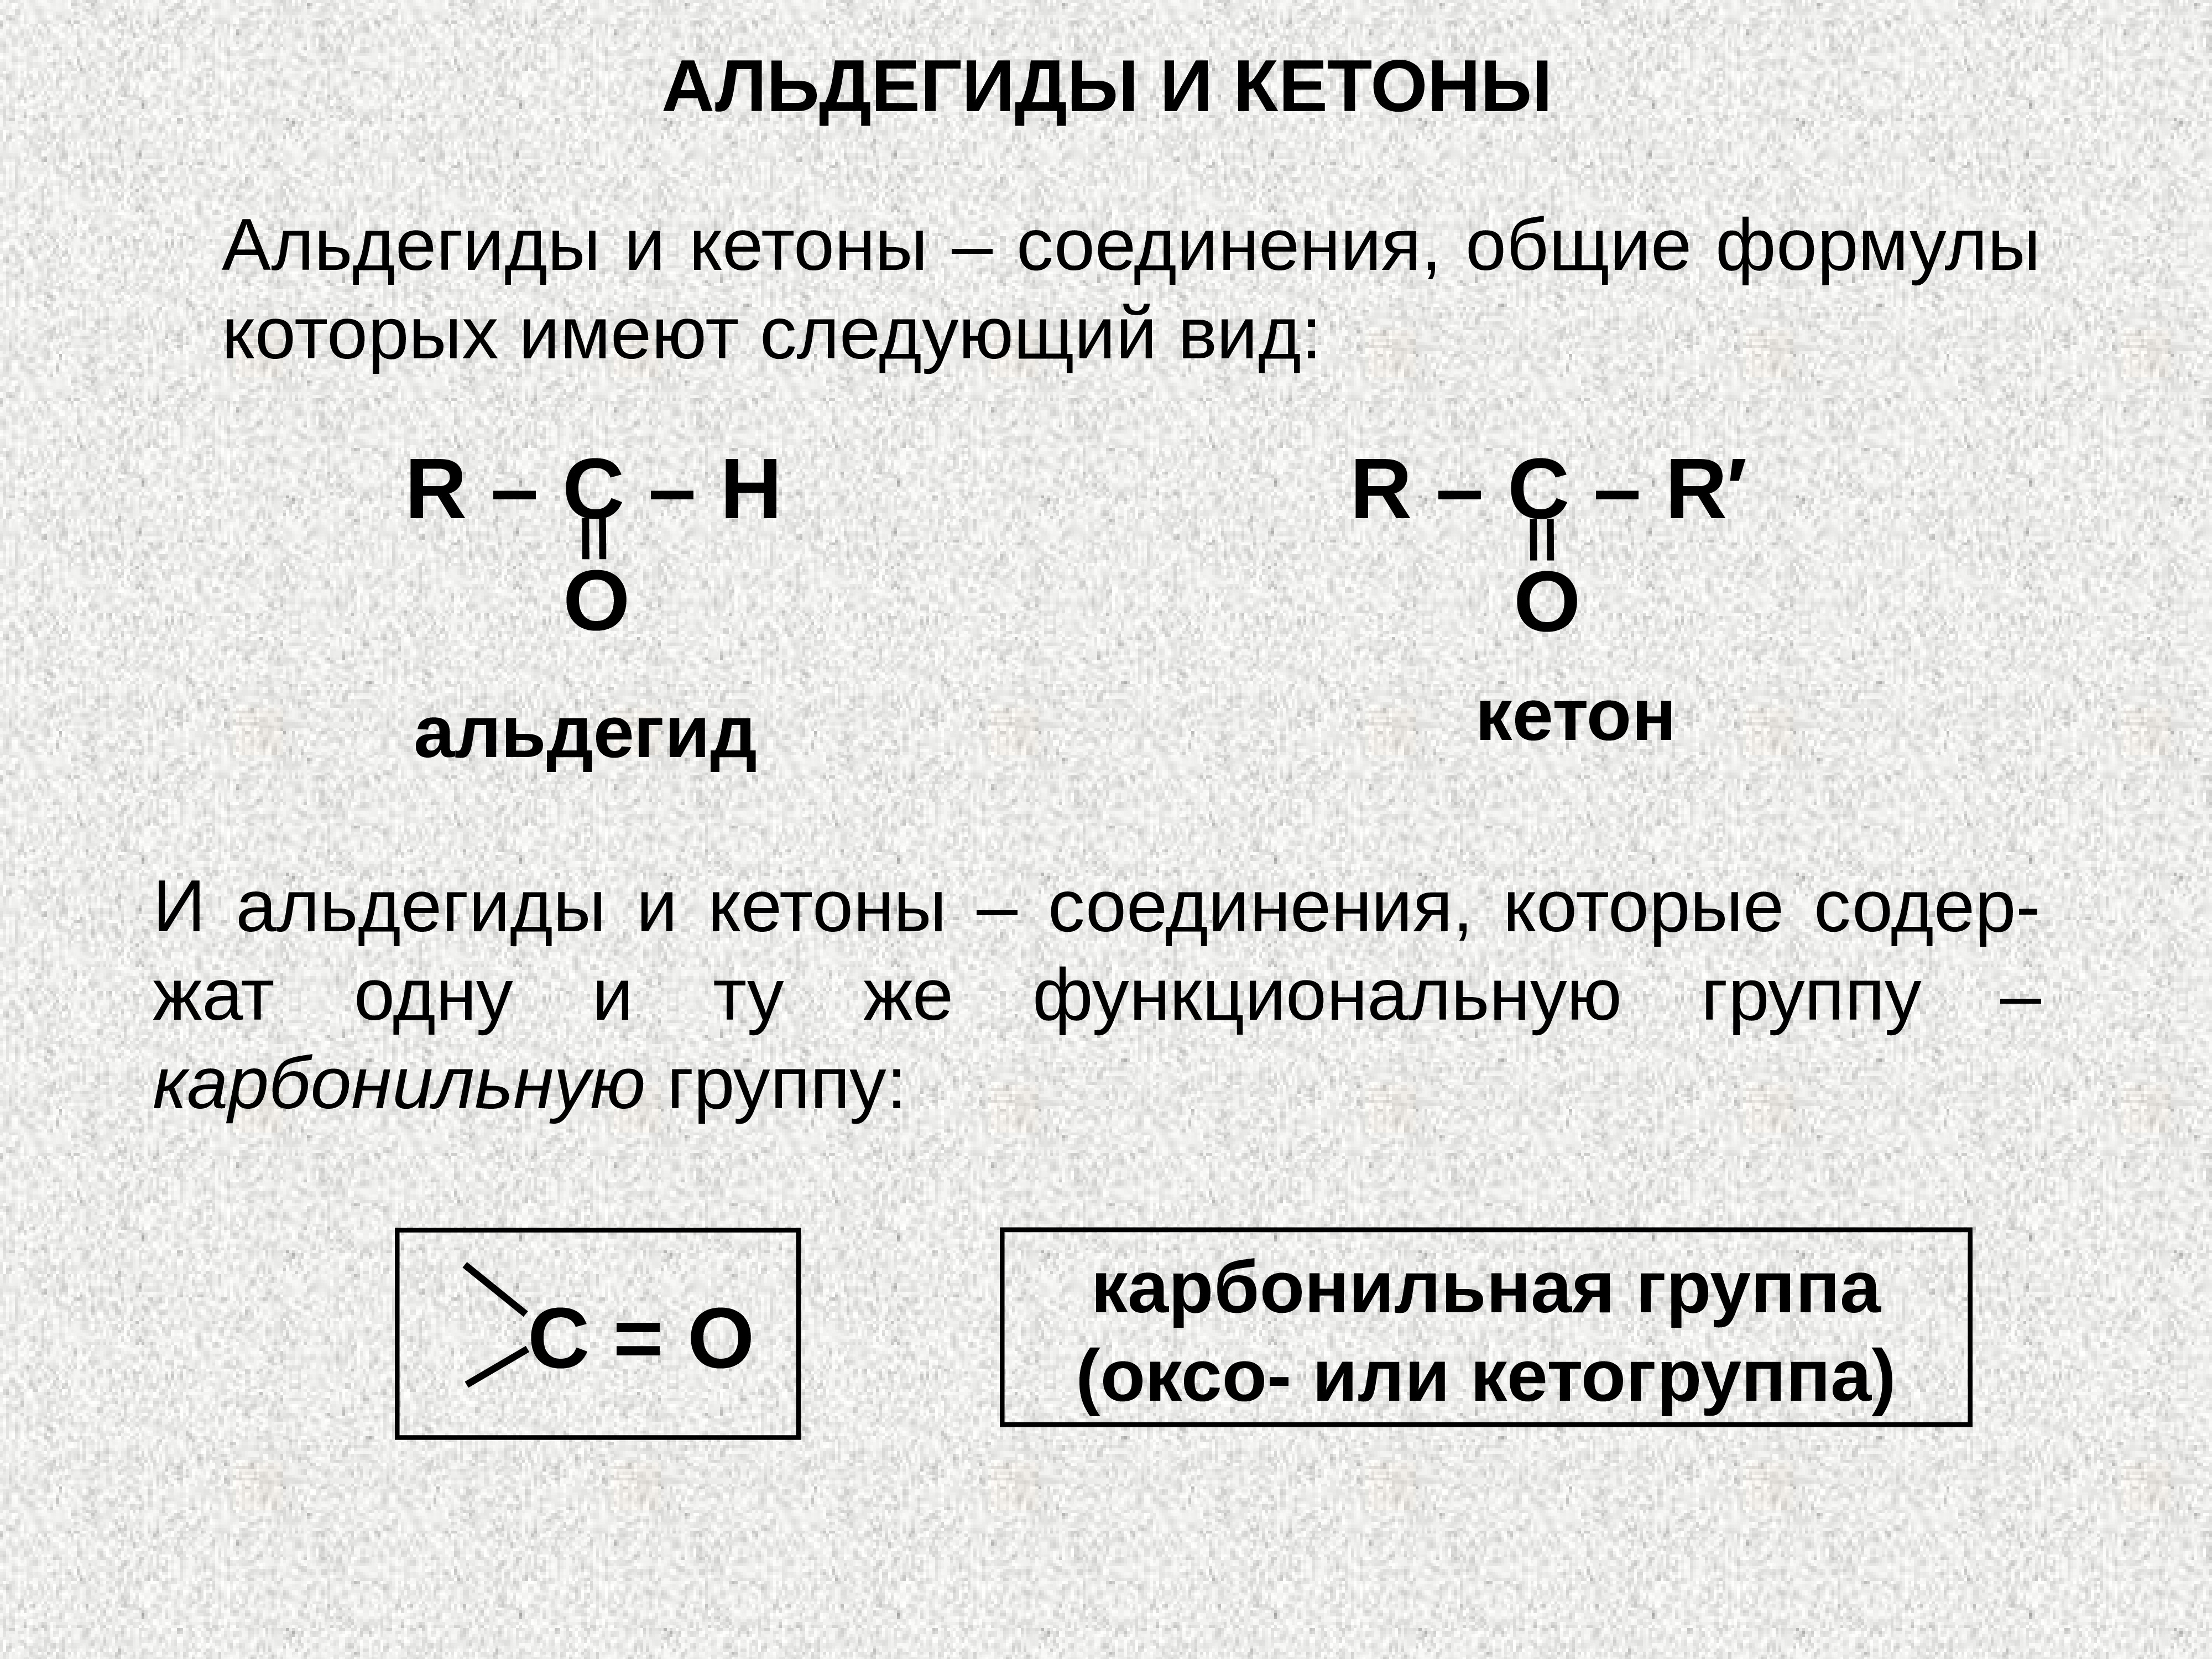 Альдегидная группа соединения. Карбонильная группа альдегидов. Какова общая формула альдегидов и кетонов. Карбонильная группа в альдегидах и кетонах. Альдегиды конспект по химии 10 класс.